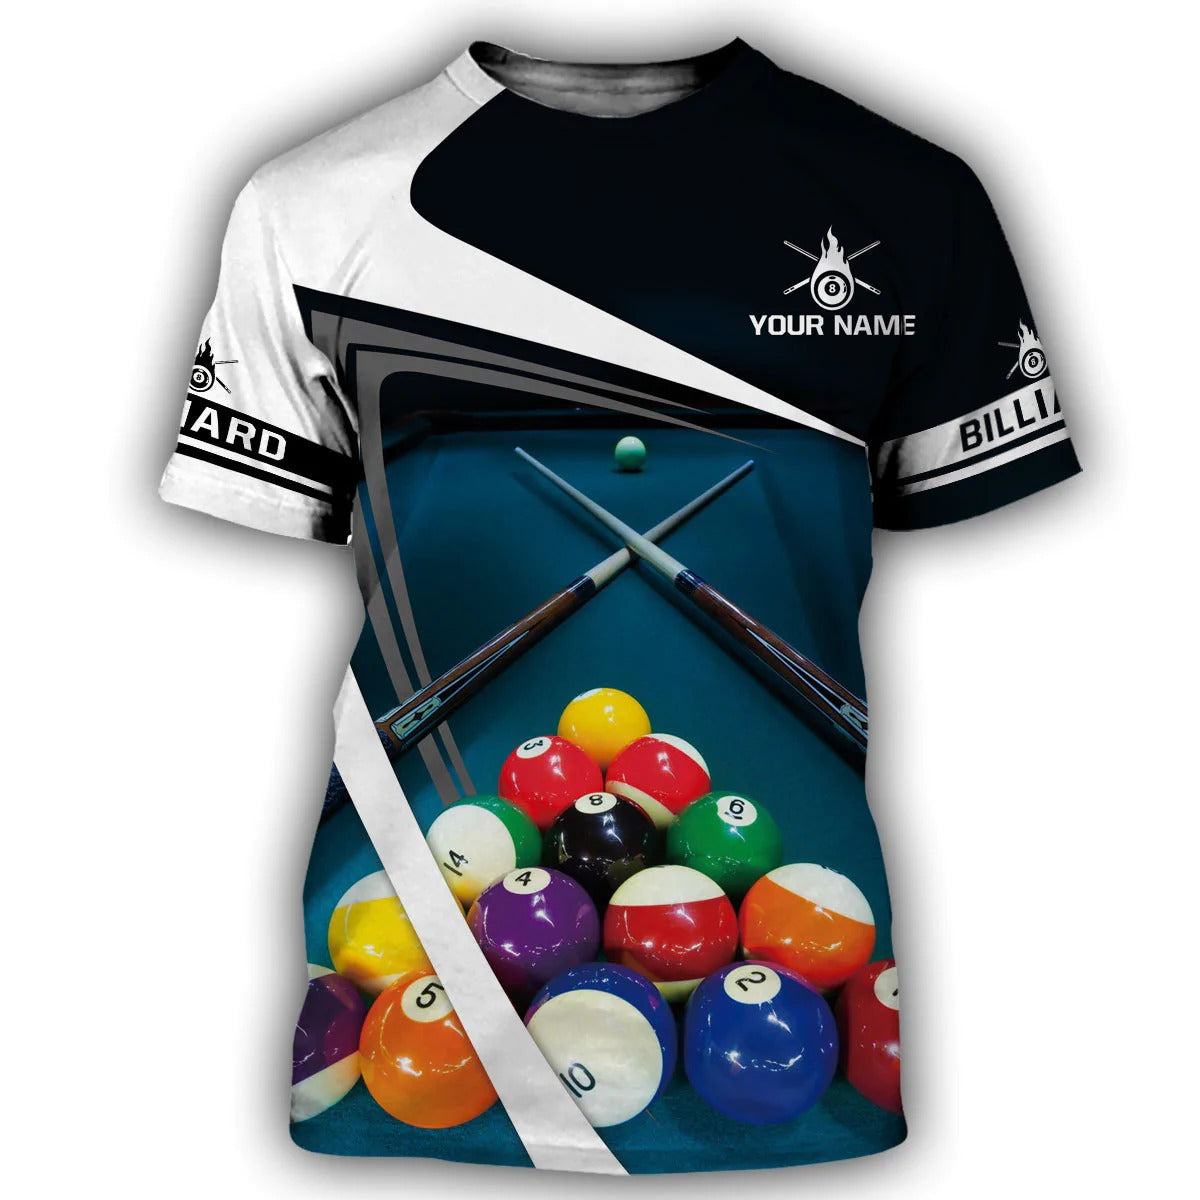 Personalized Name Billiard Shirt Men Women/ Billiard 3D Hoodie/ Billiard Team Uniform/ Billiard Lover Gift